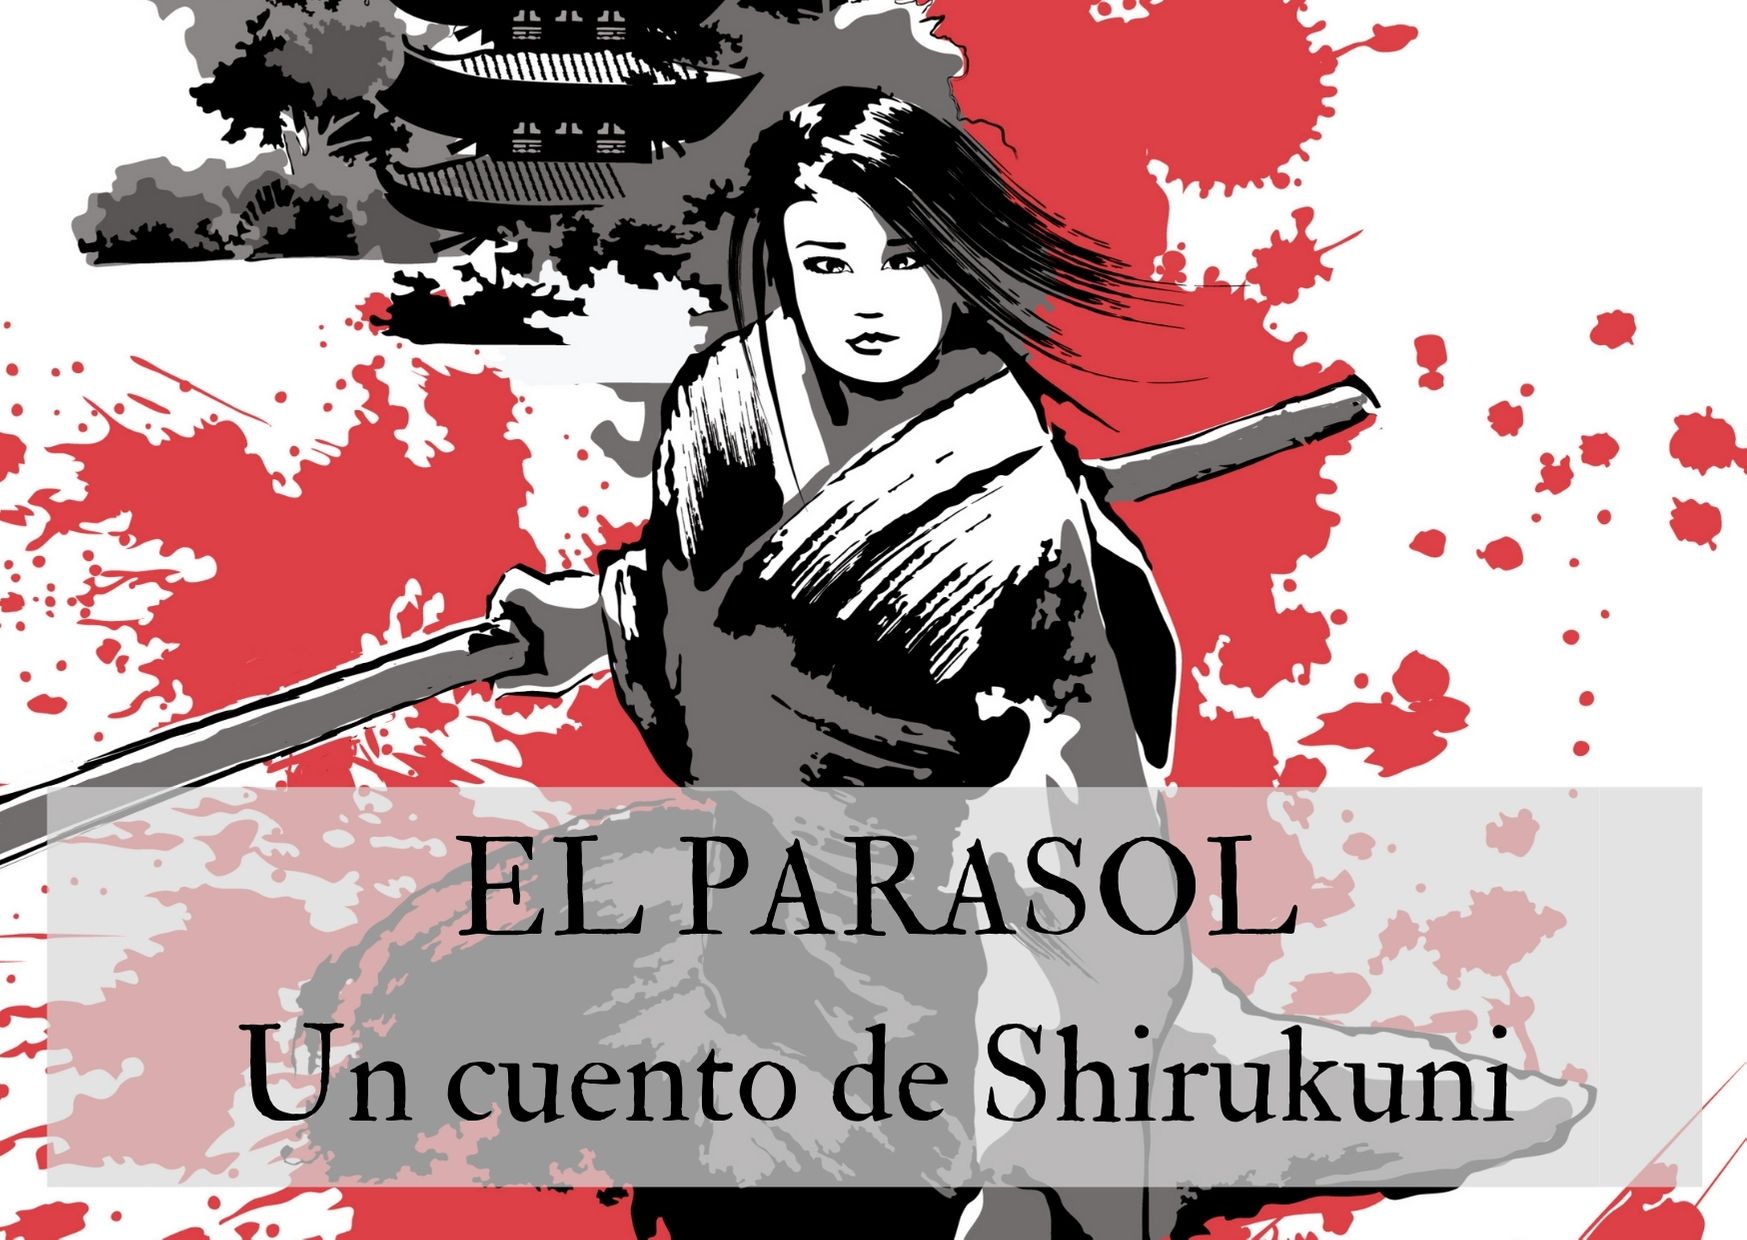 El parasol, un cuento de Shirukuni